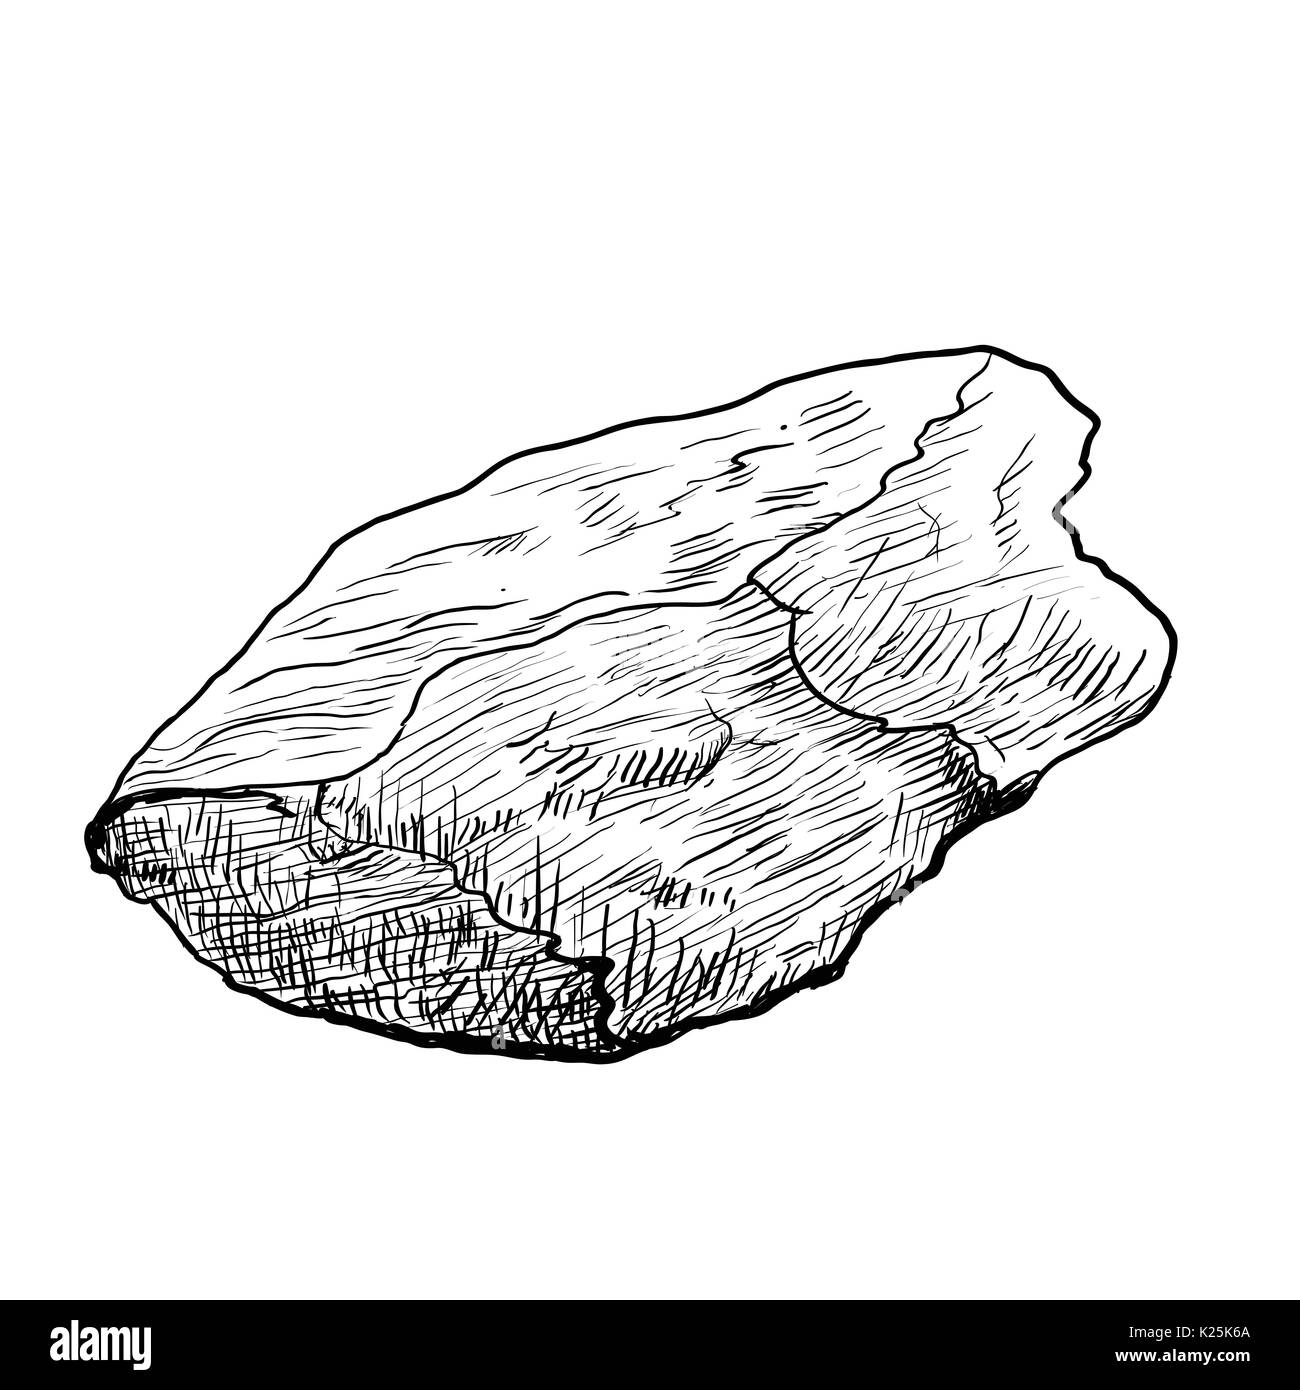 Disegno a mano di roccia, pietra isolato su sfondo bianco. Bianco e nero linea semplice illustrazione vettoriale per libro da colorare - Linea tracciata vettore Illustrazione Vettoriale